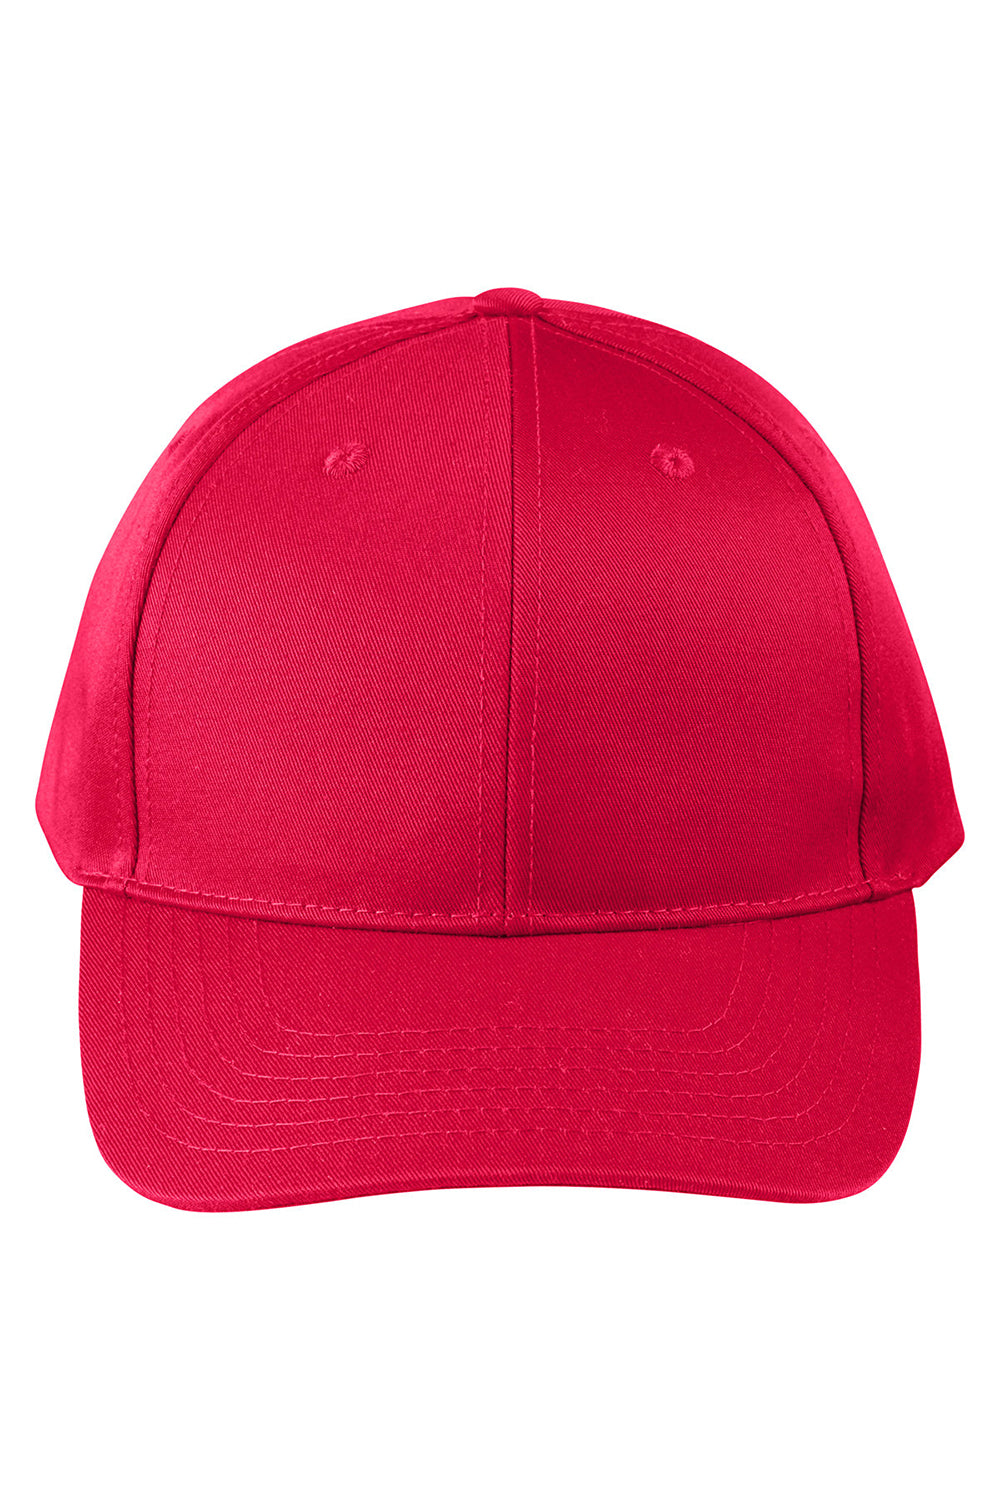 Big Accessories BX020SB Mens Twill Snapback Hat Red Flat Front